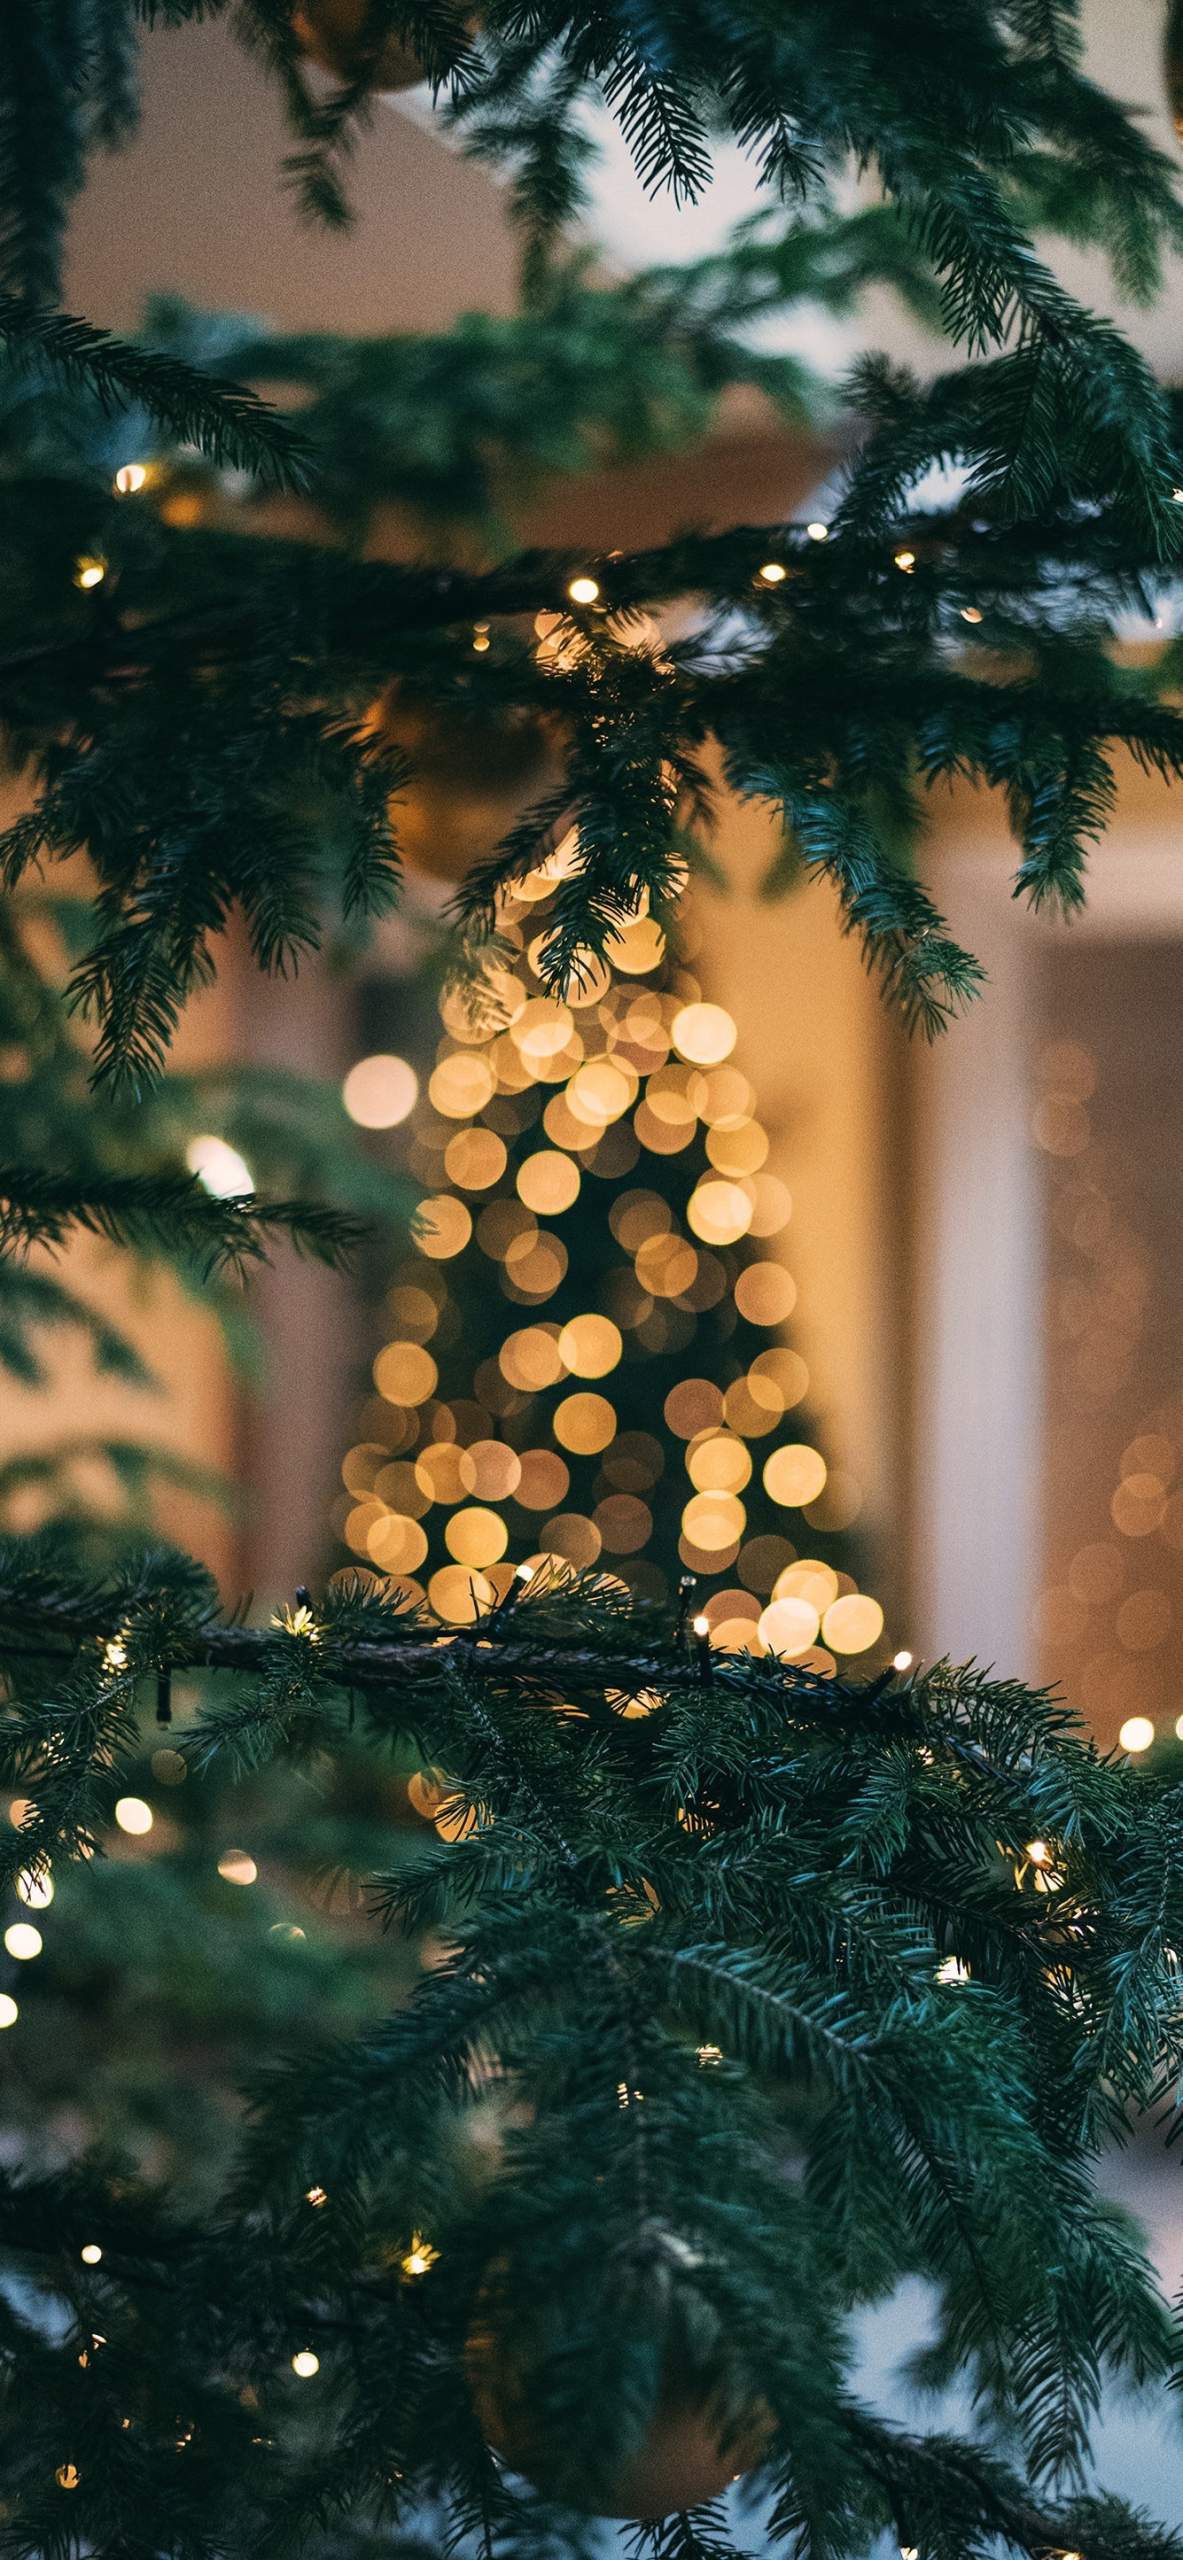 Bạn muốn có hình nền Giáng Sinh độc đáo và mới nhất cho điện thoại của mình? Tham khảo ngay ảnh nền Giáng Sinh 2019 trên smartphone để mang đến không gian đầy ấm áp cho mùa lễ hội.